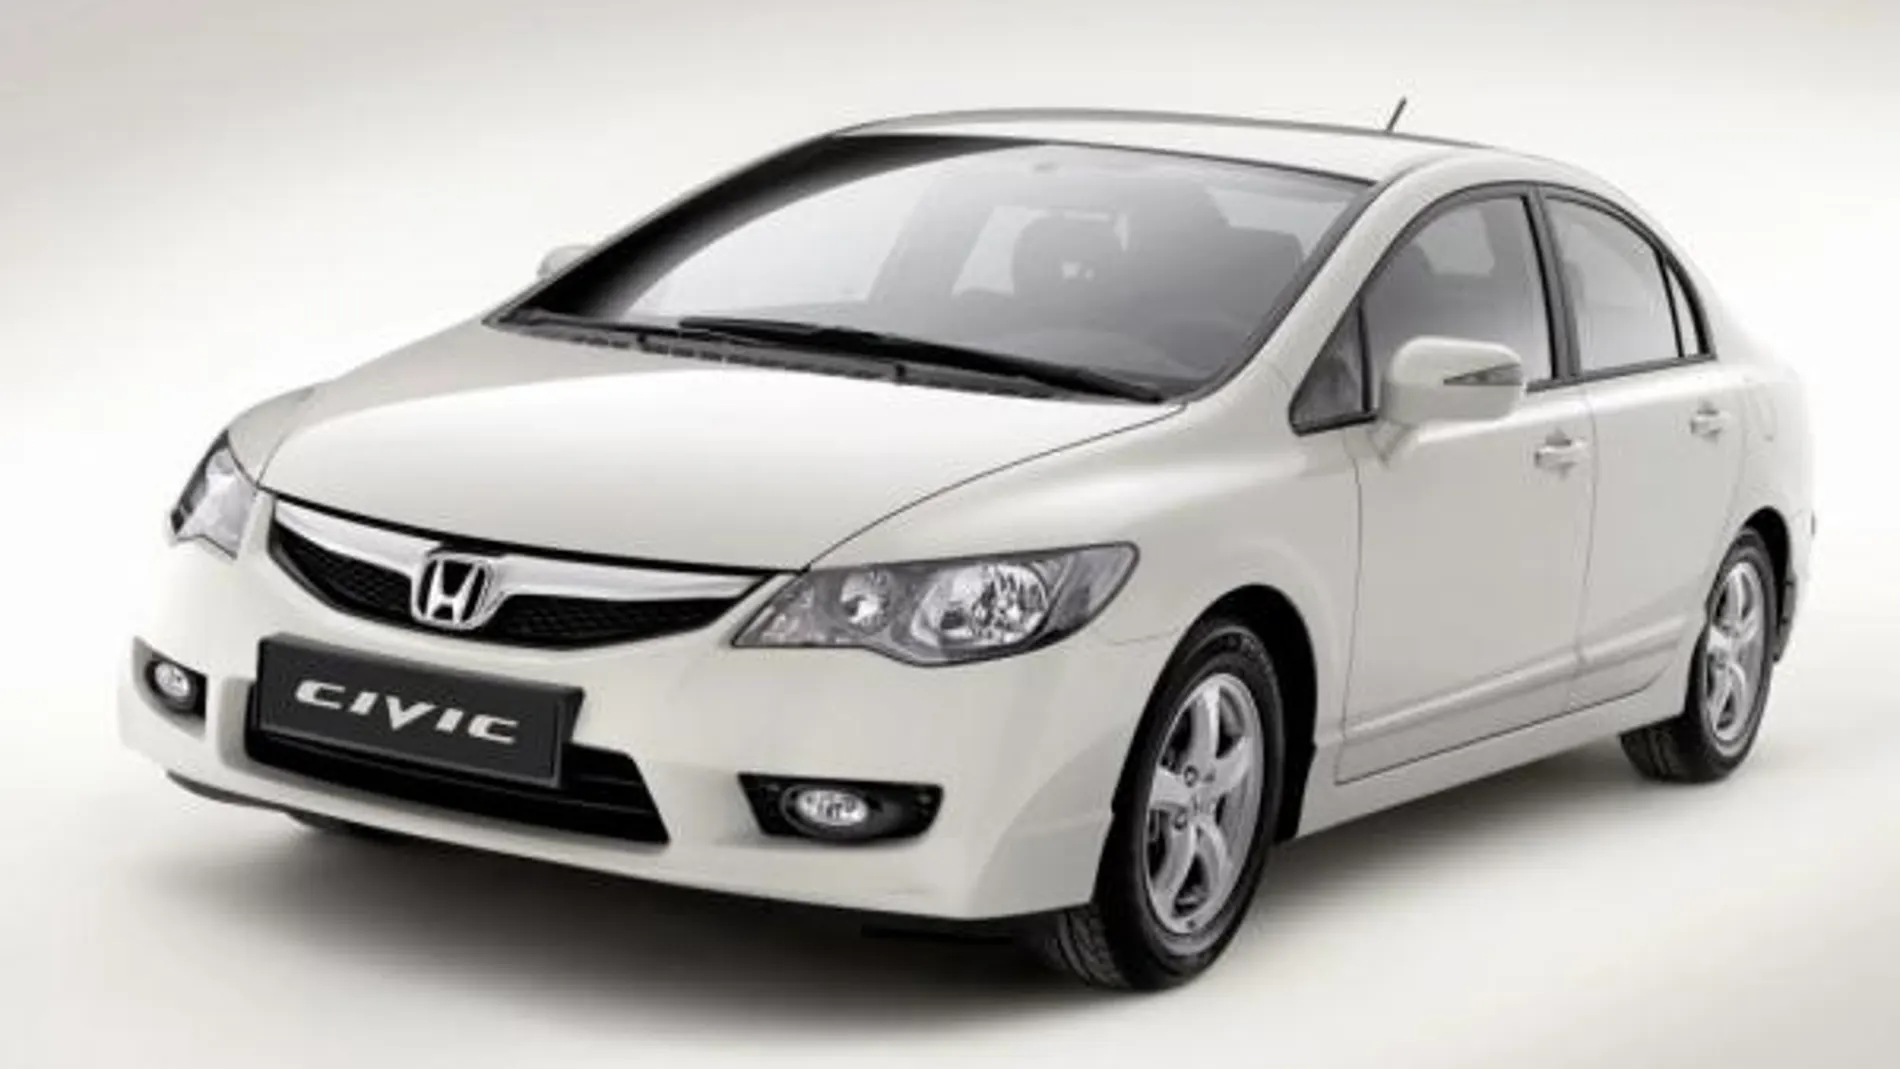 Honda amplía su oferta de híbridos con el Civic